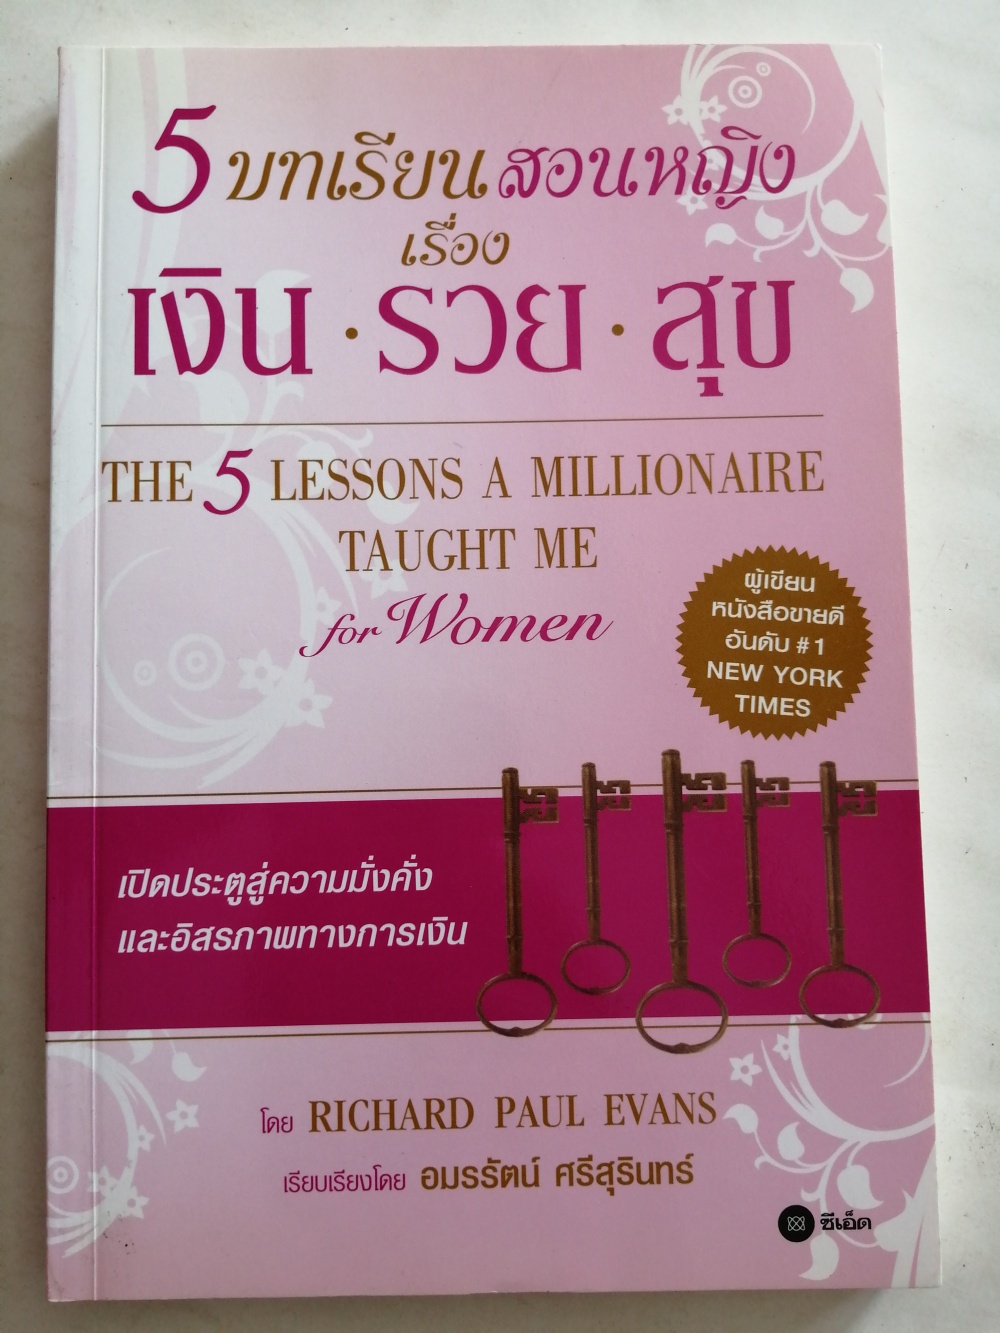 5 บทเรียนสอนหญิงเรื่อง เงิน รวย สุข